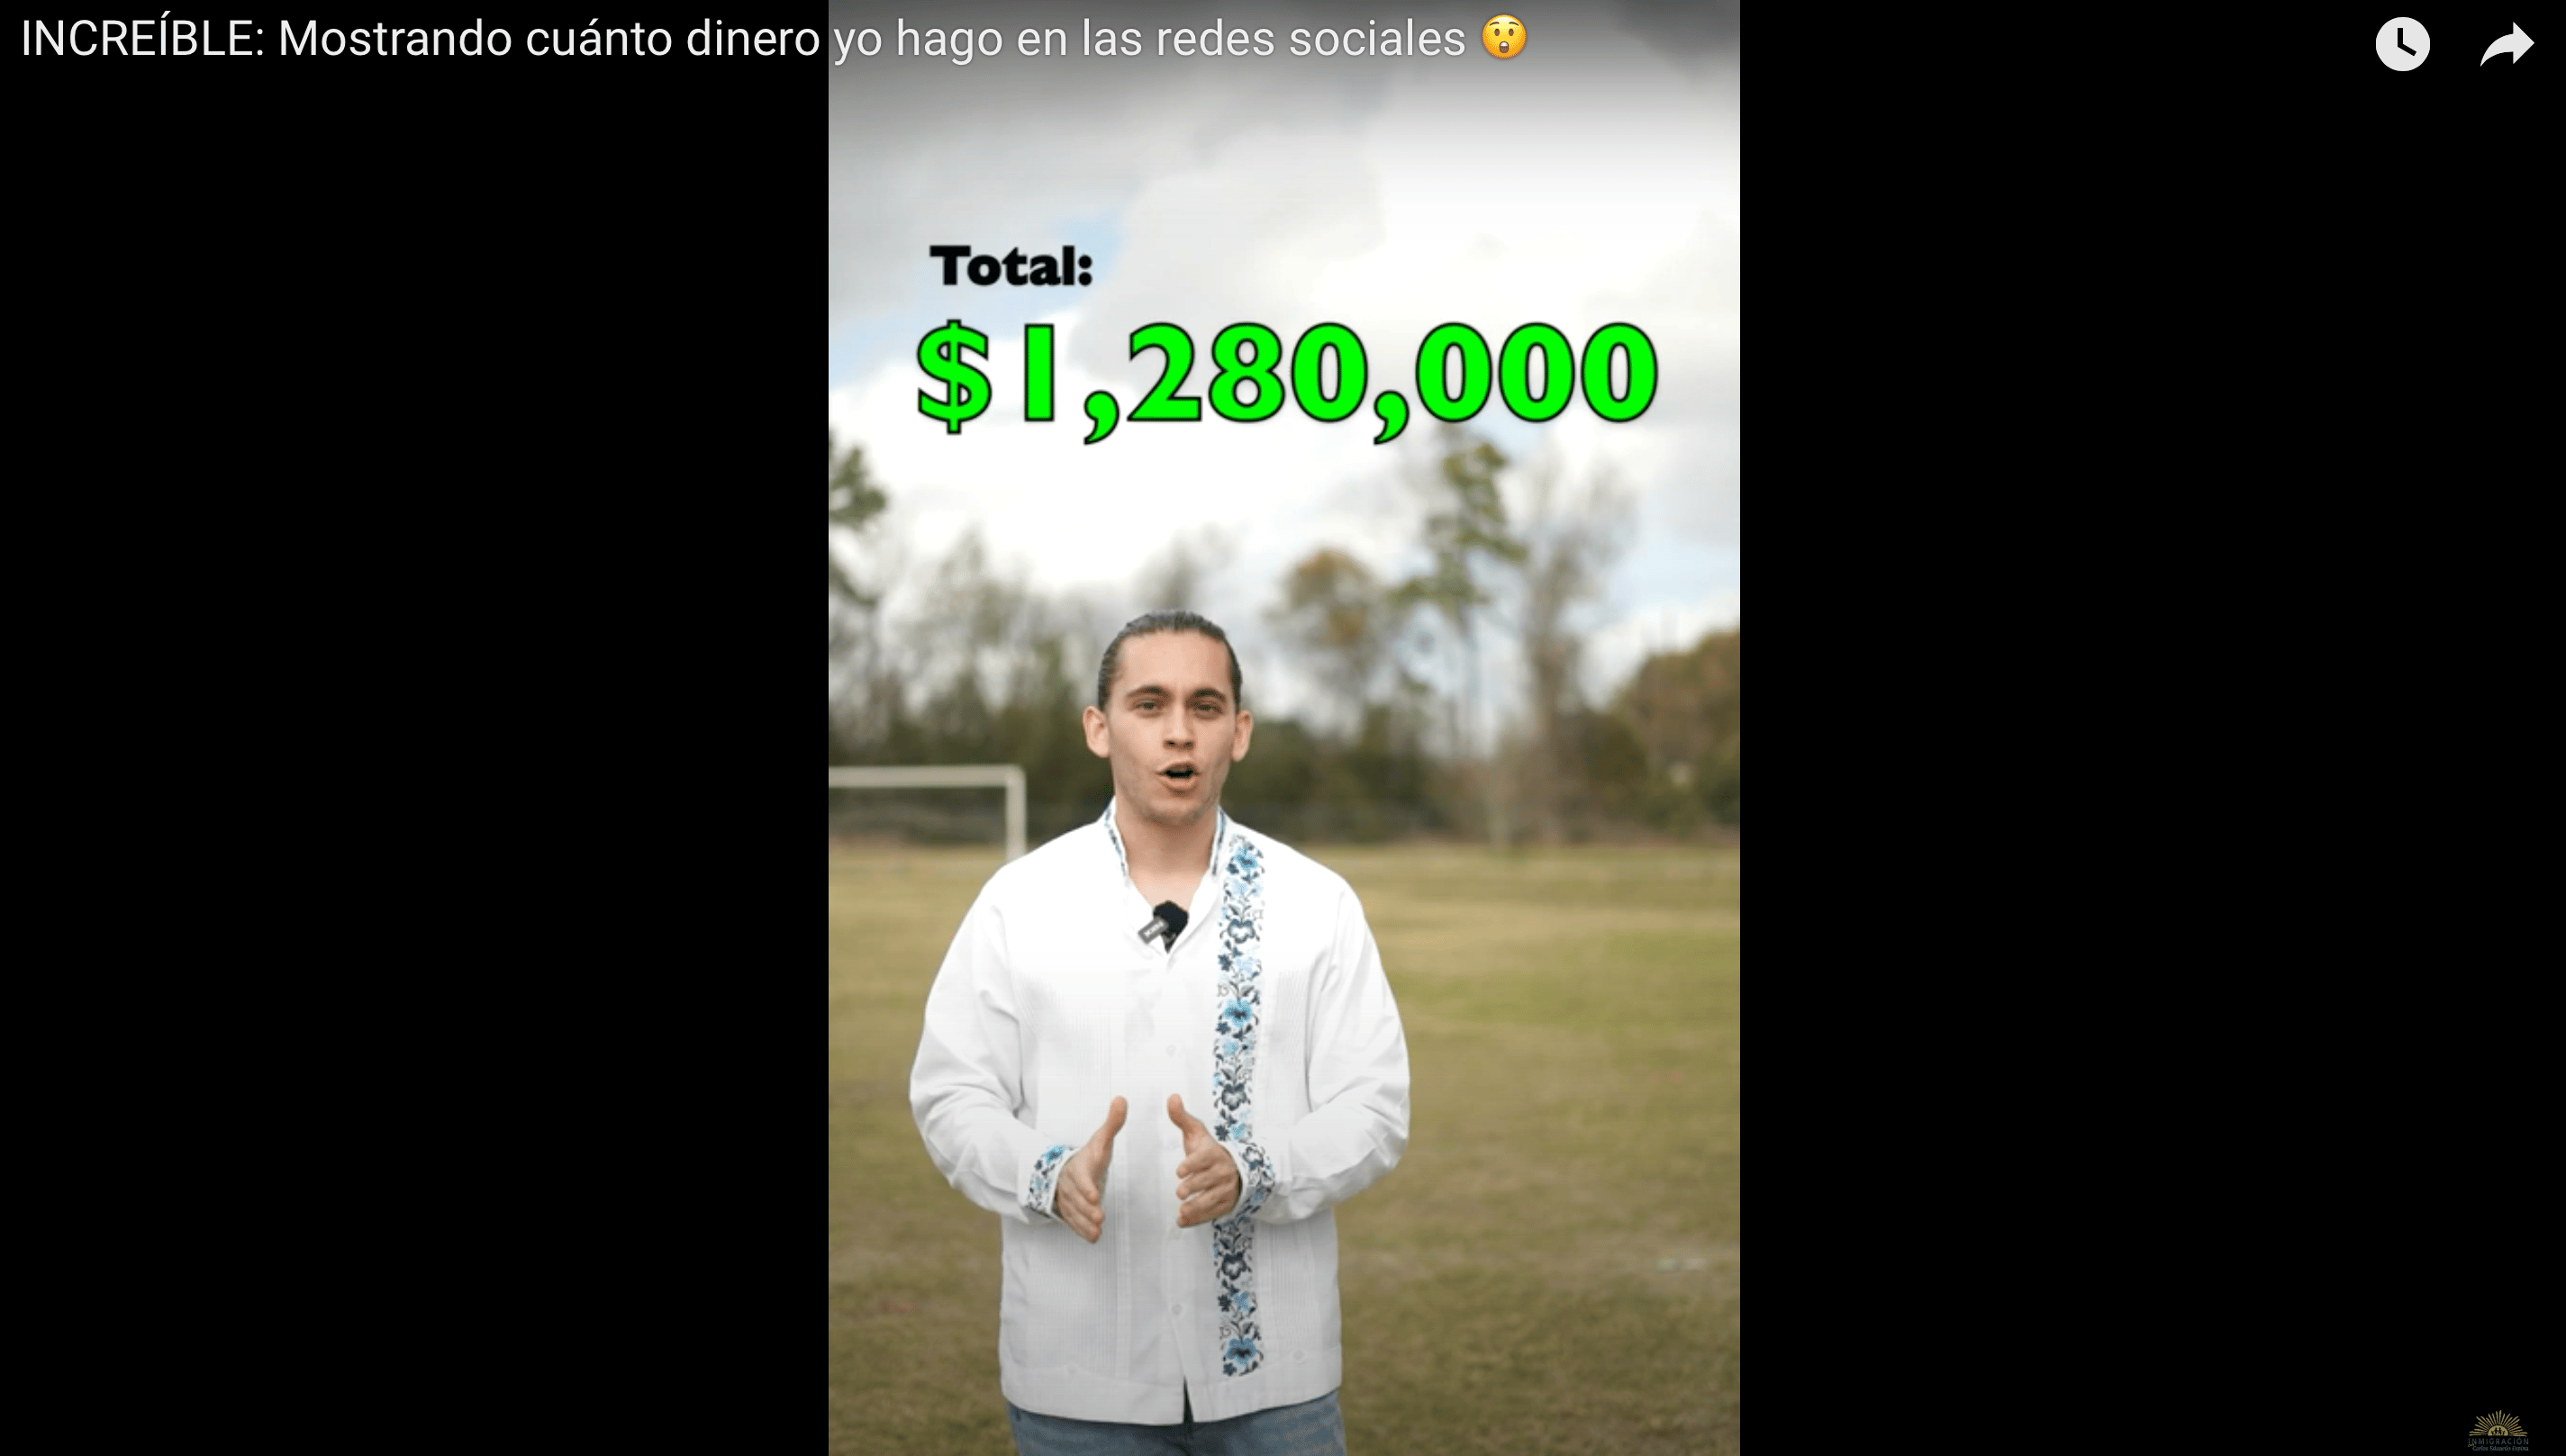 młody człowiek w białej koszuli i dżinsach coś tłumaczy, nad nim napis "Toatal: $1280000"